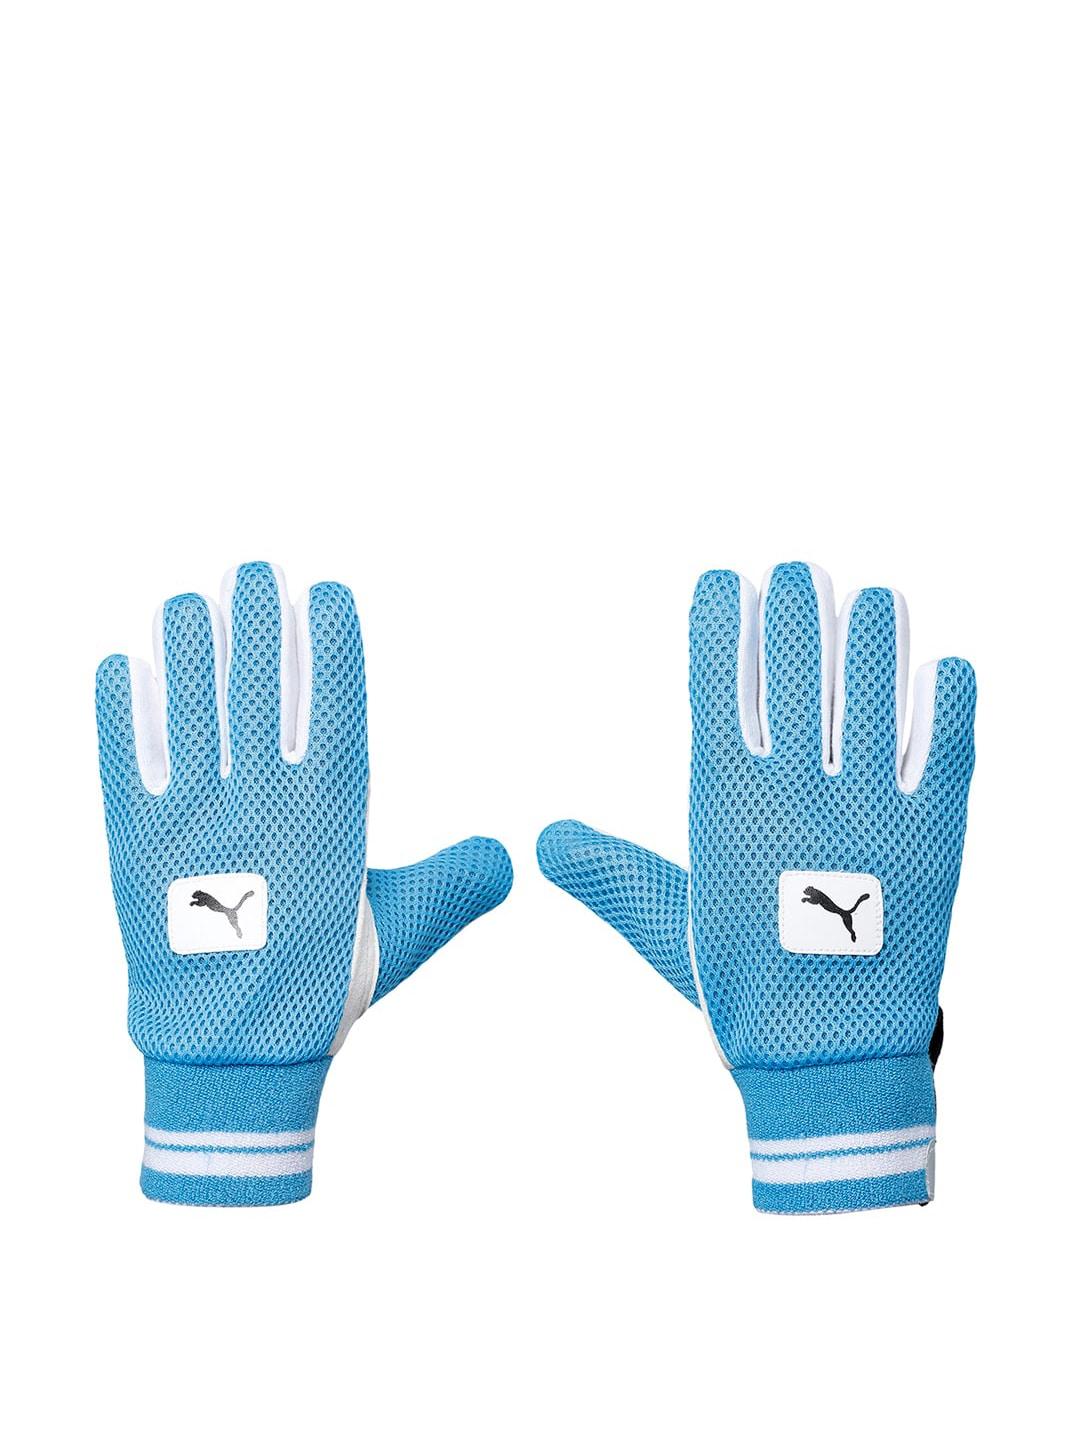 puma-white-&-blue-future-20.2-wki-batting-gloves